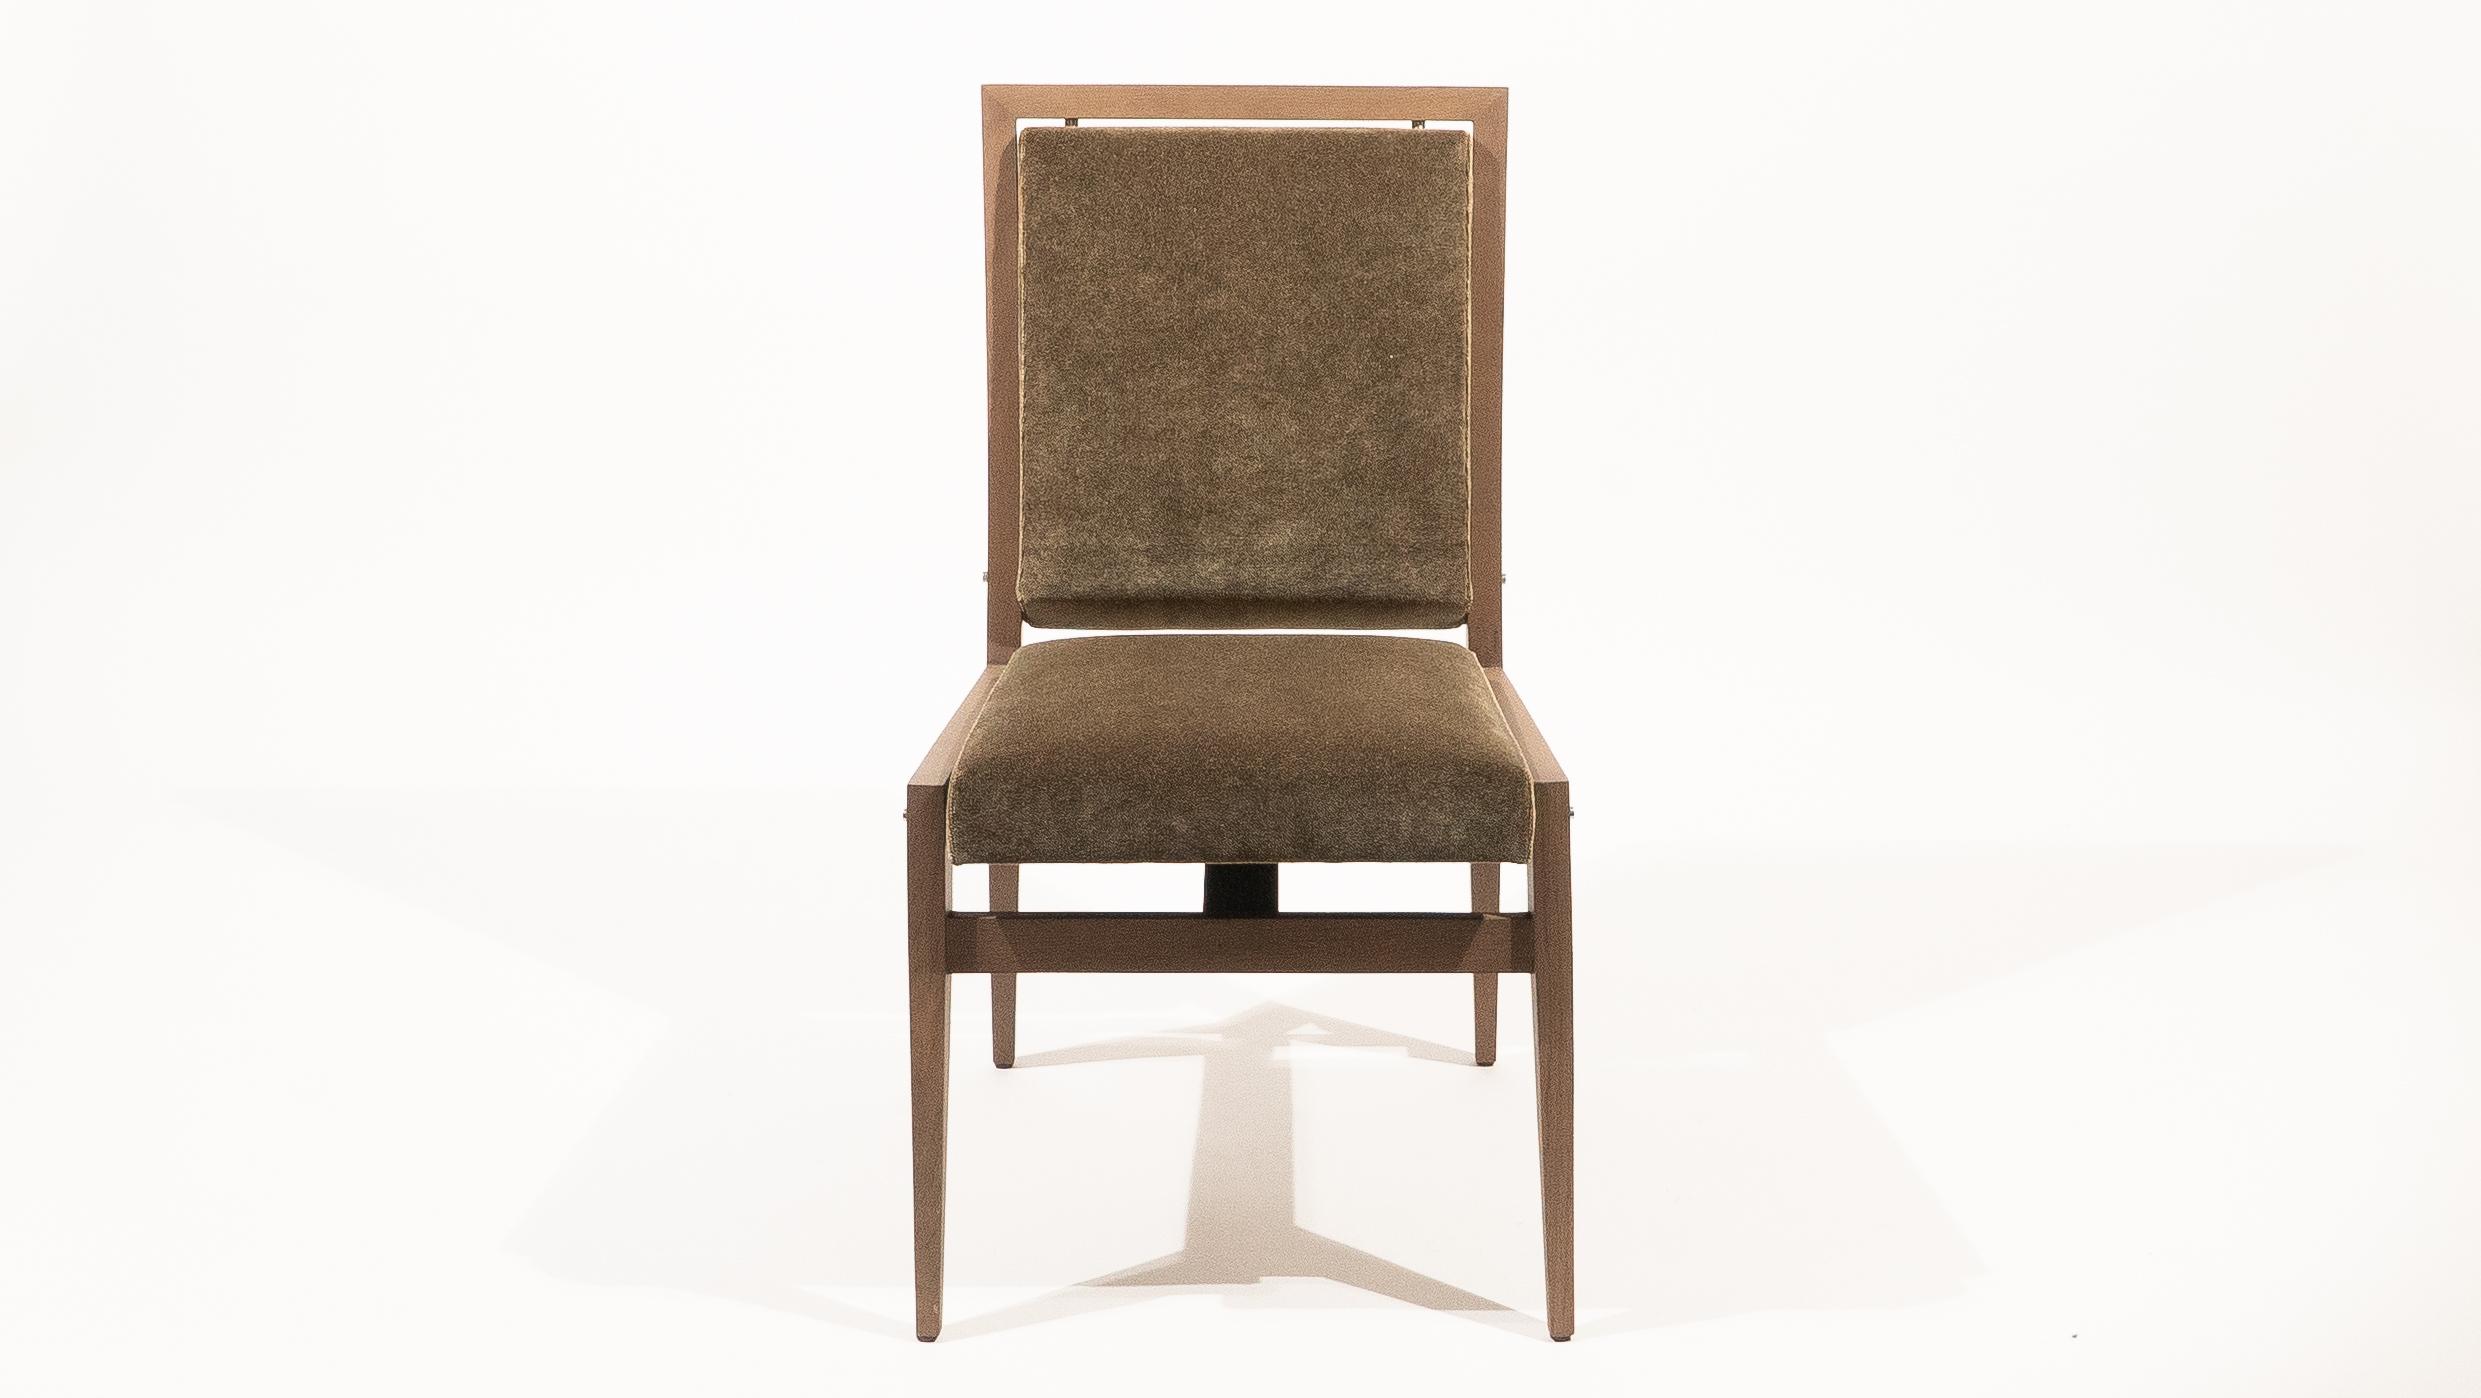 Dieser Esszimmerstuhl wurde 1960 von Maxime Old für die Stadtverwaltung von Rouen entworfen. Eines der emblematischsten Projekte des Designers. Die ANNE JACQUEMIN SABLON GALLERY präsentiert eine zeitgenössische Ausgabe des Councill-Stuhls, der sich